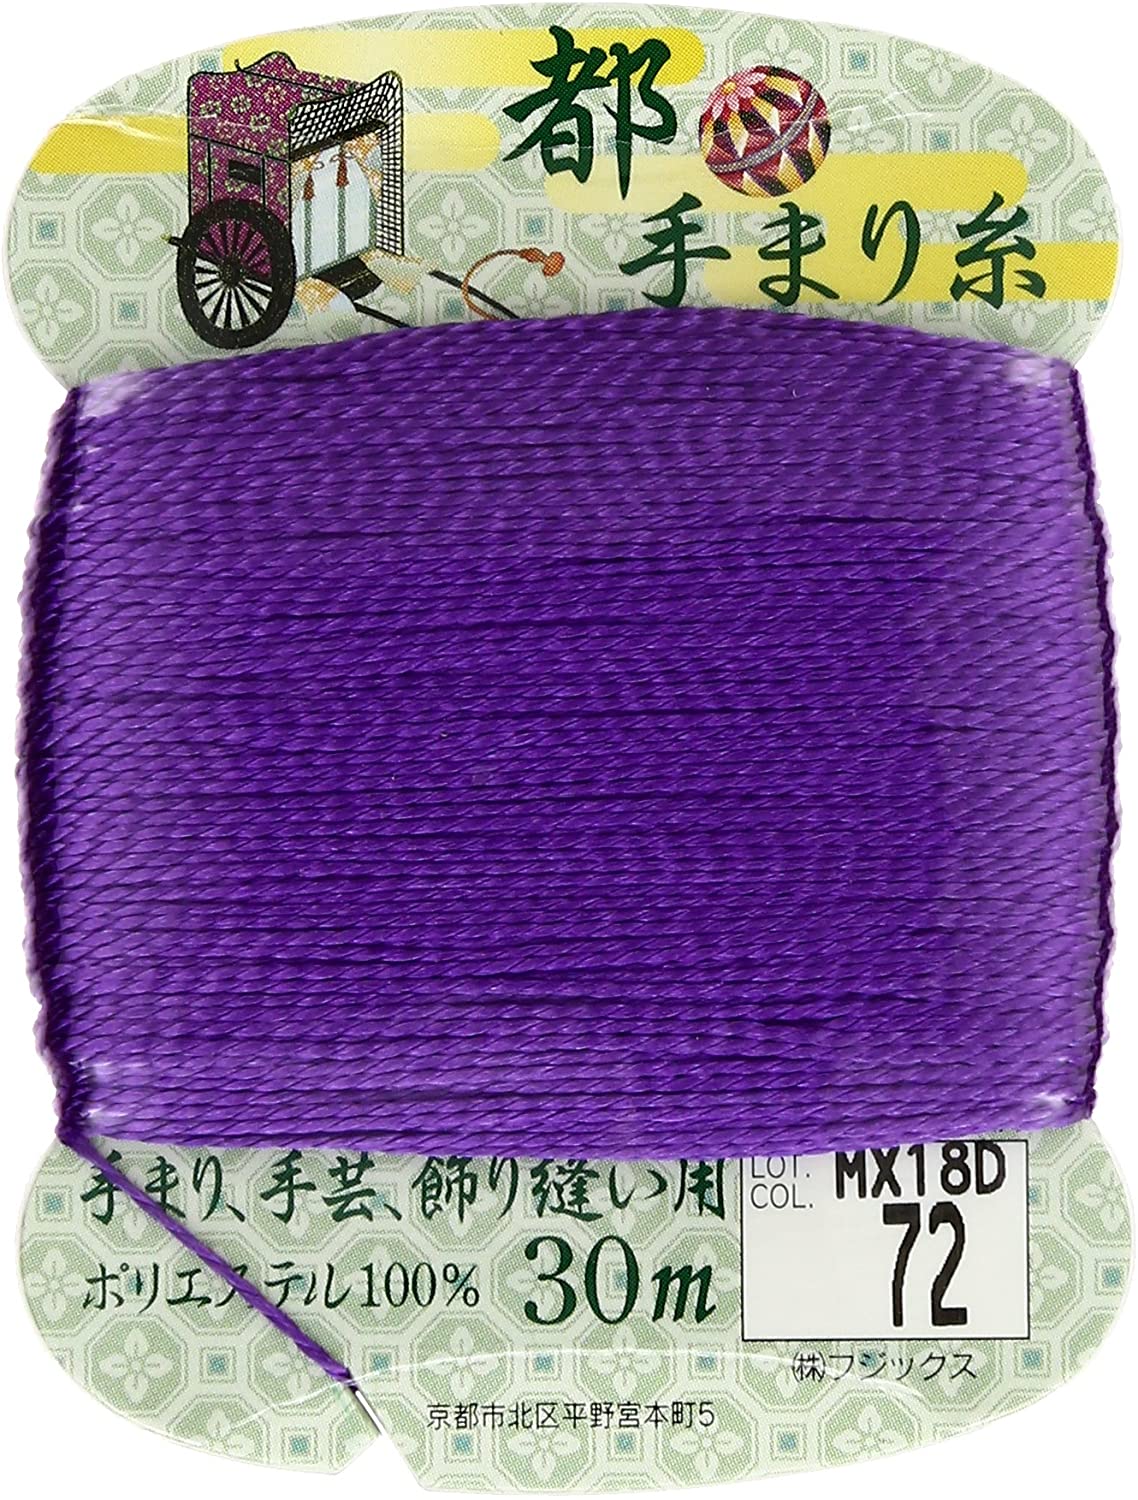 手まり糸「手芸材料の卸売りサイトChuko Online」